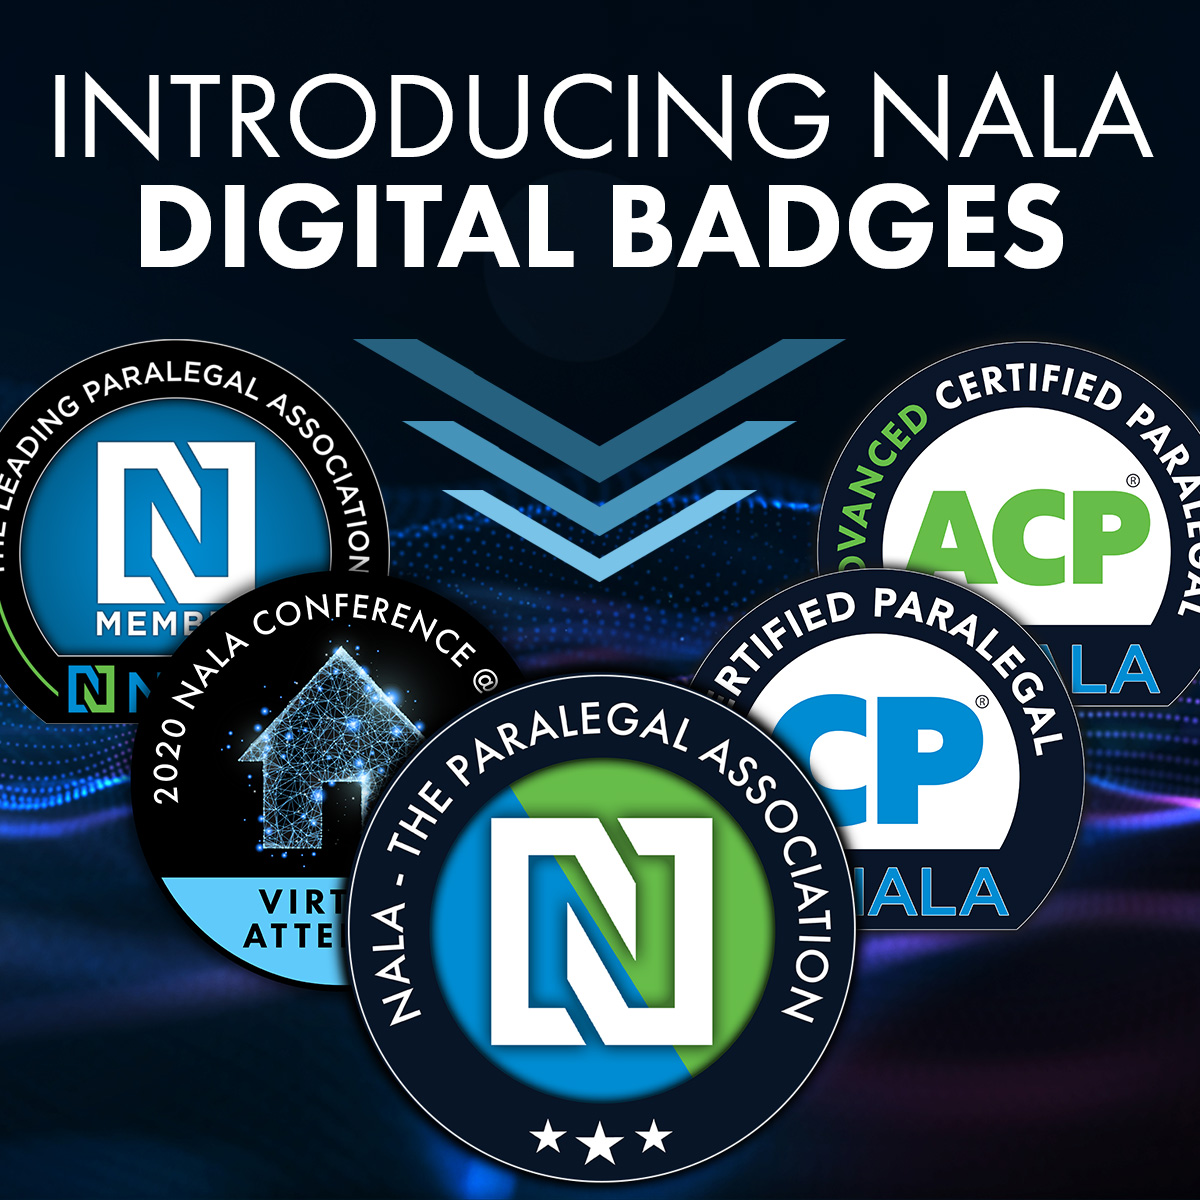 Introducing NALA Badges